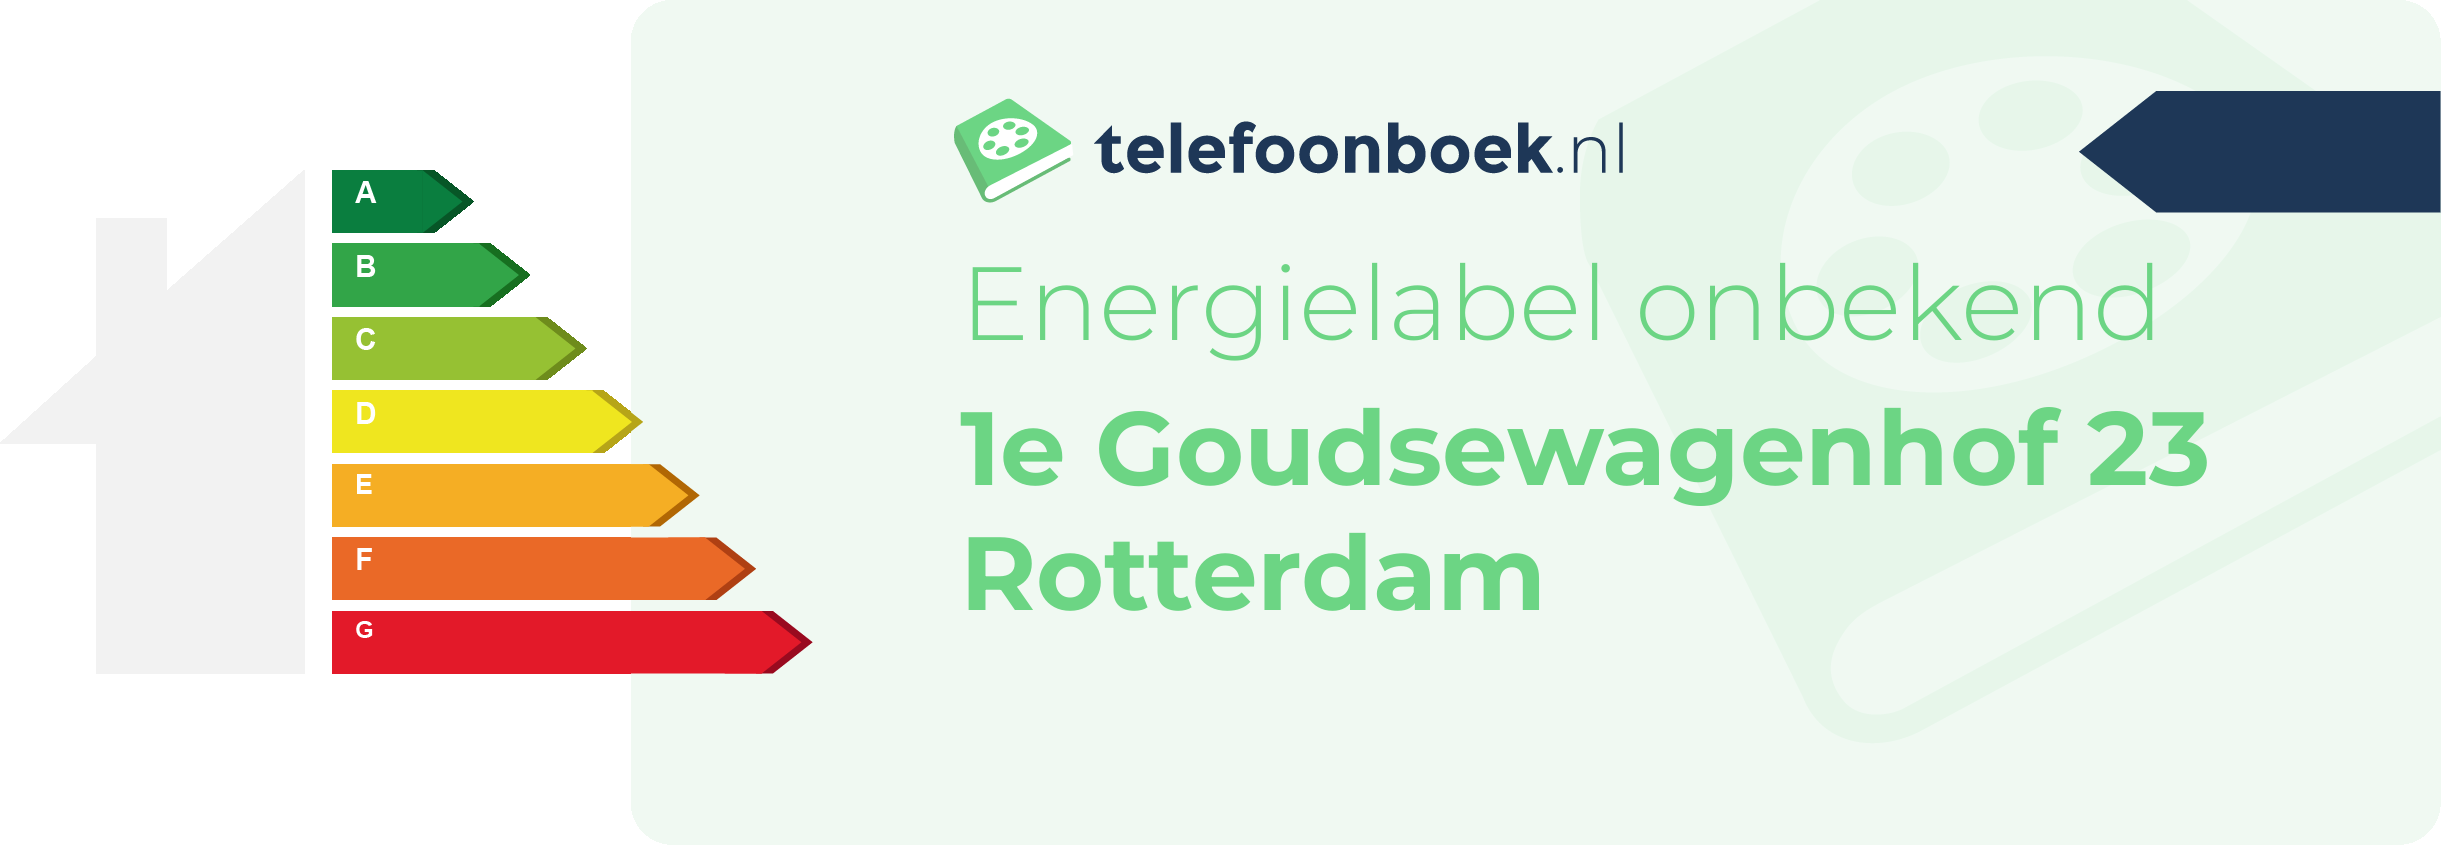 Energielabel 1e Goudsewagenhof 23 Rotterdam